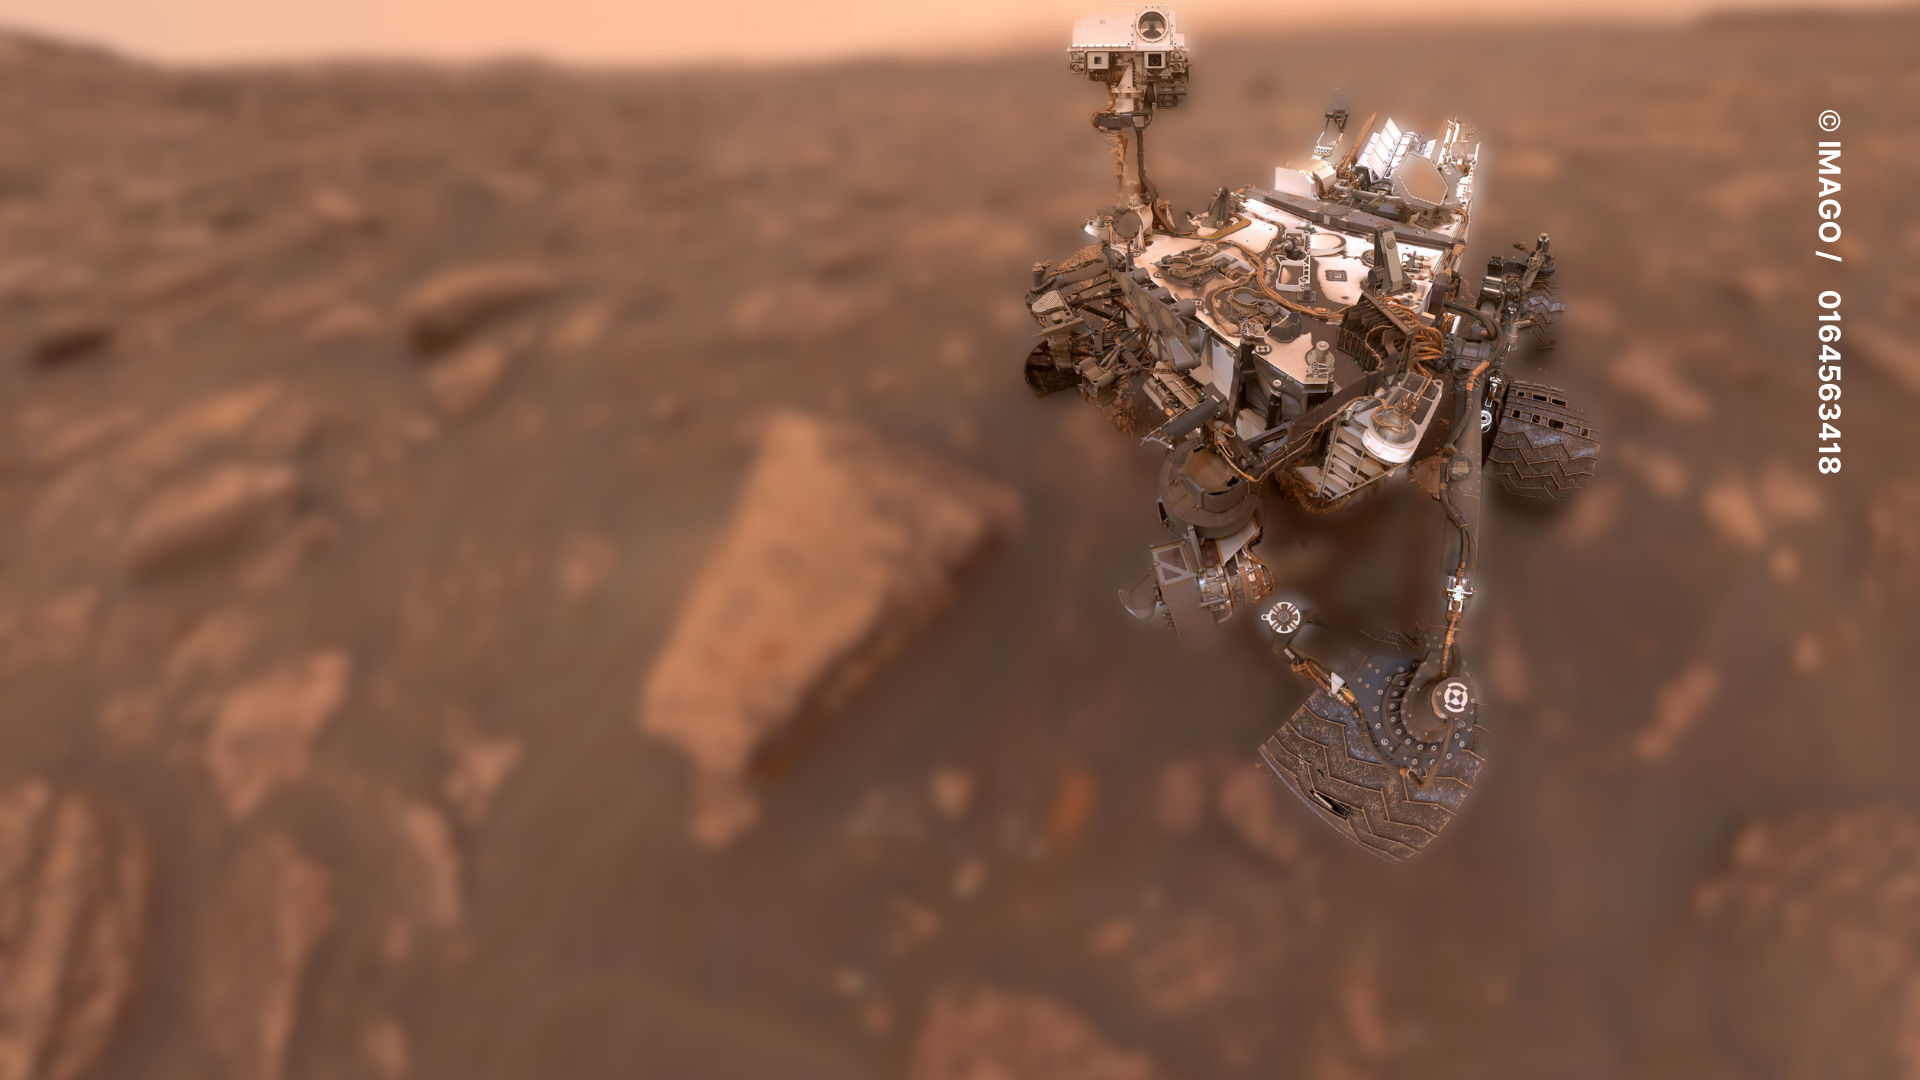 Sensationsfund auf dem Mars: Curiosity entdeckt lebenswichtiges Metall